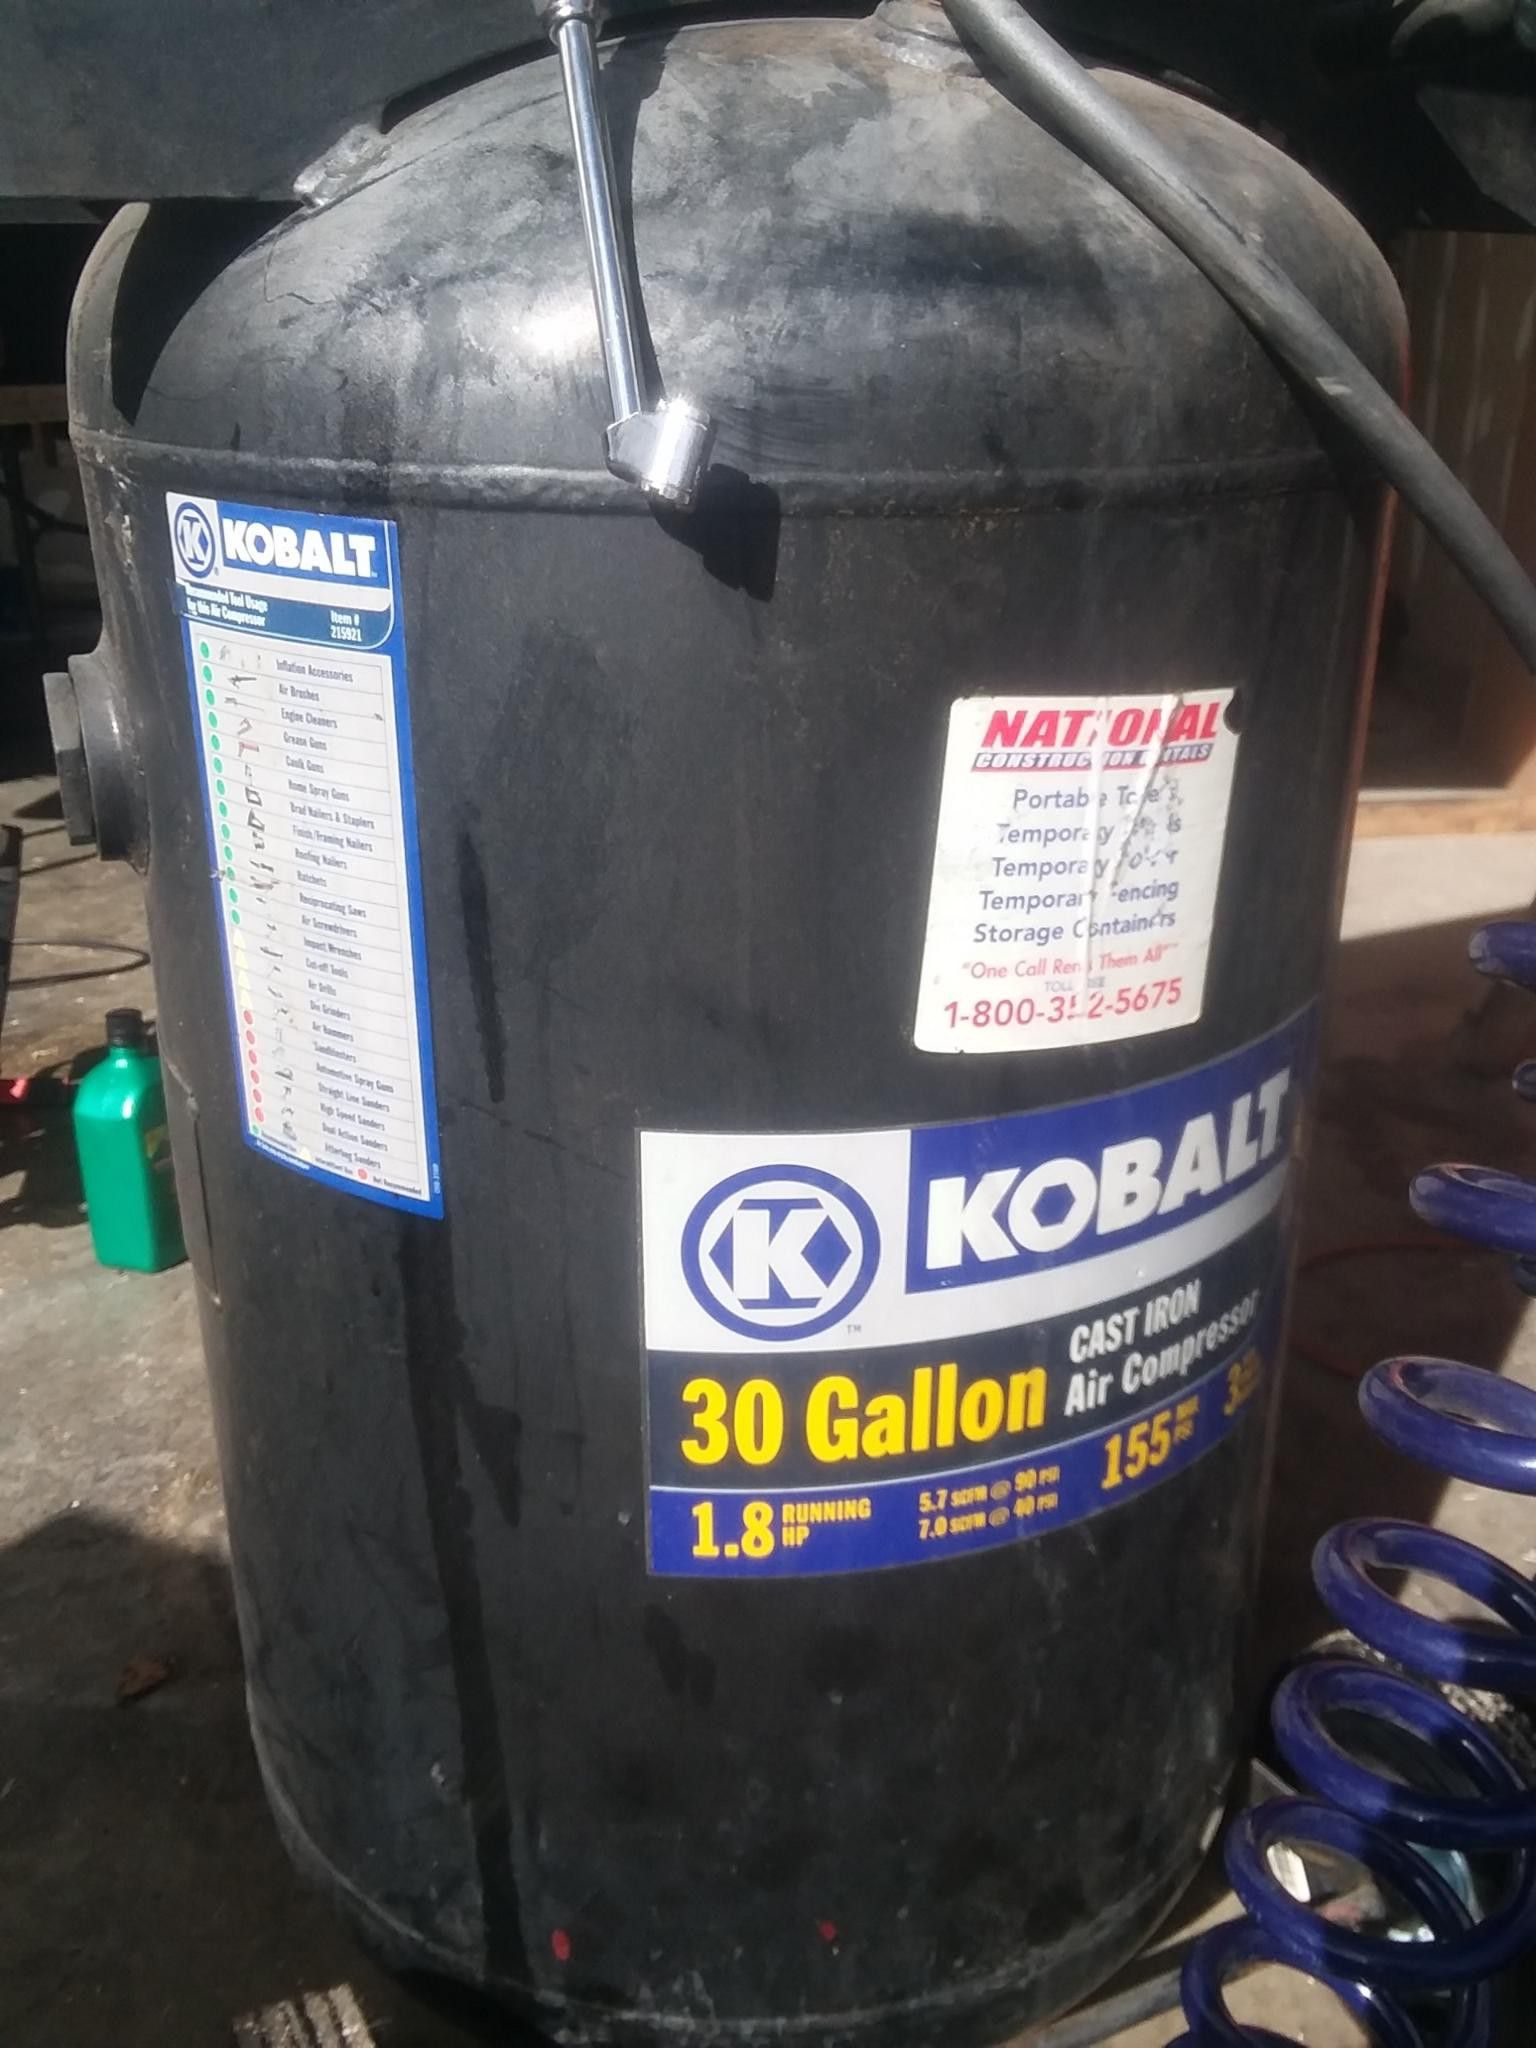 30 gallon uprigt Kobalt compressor